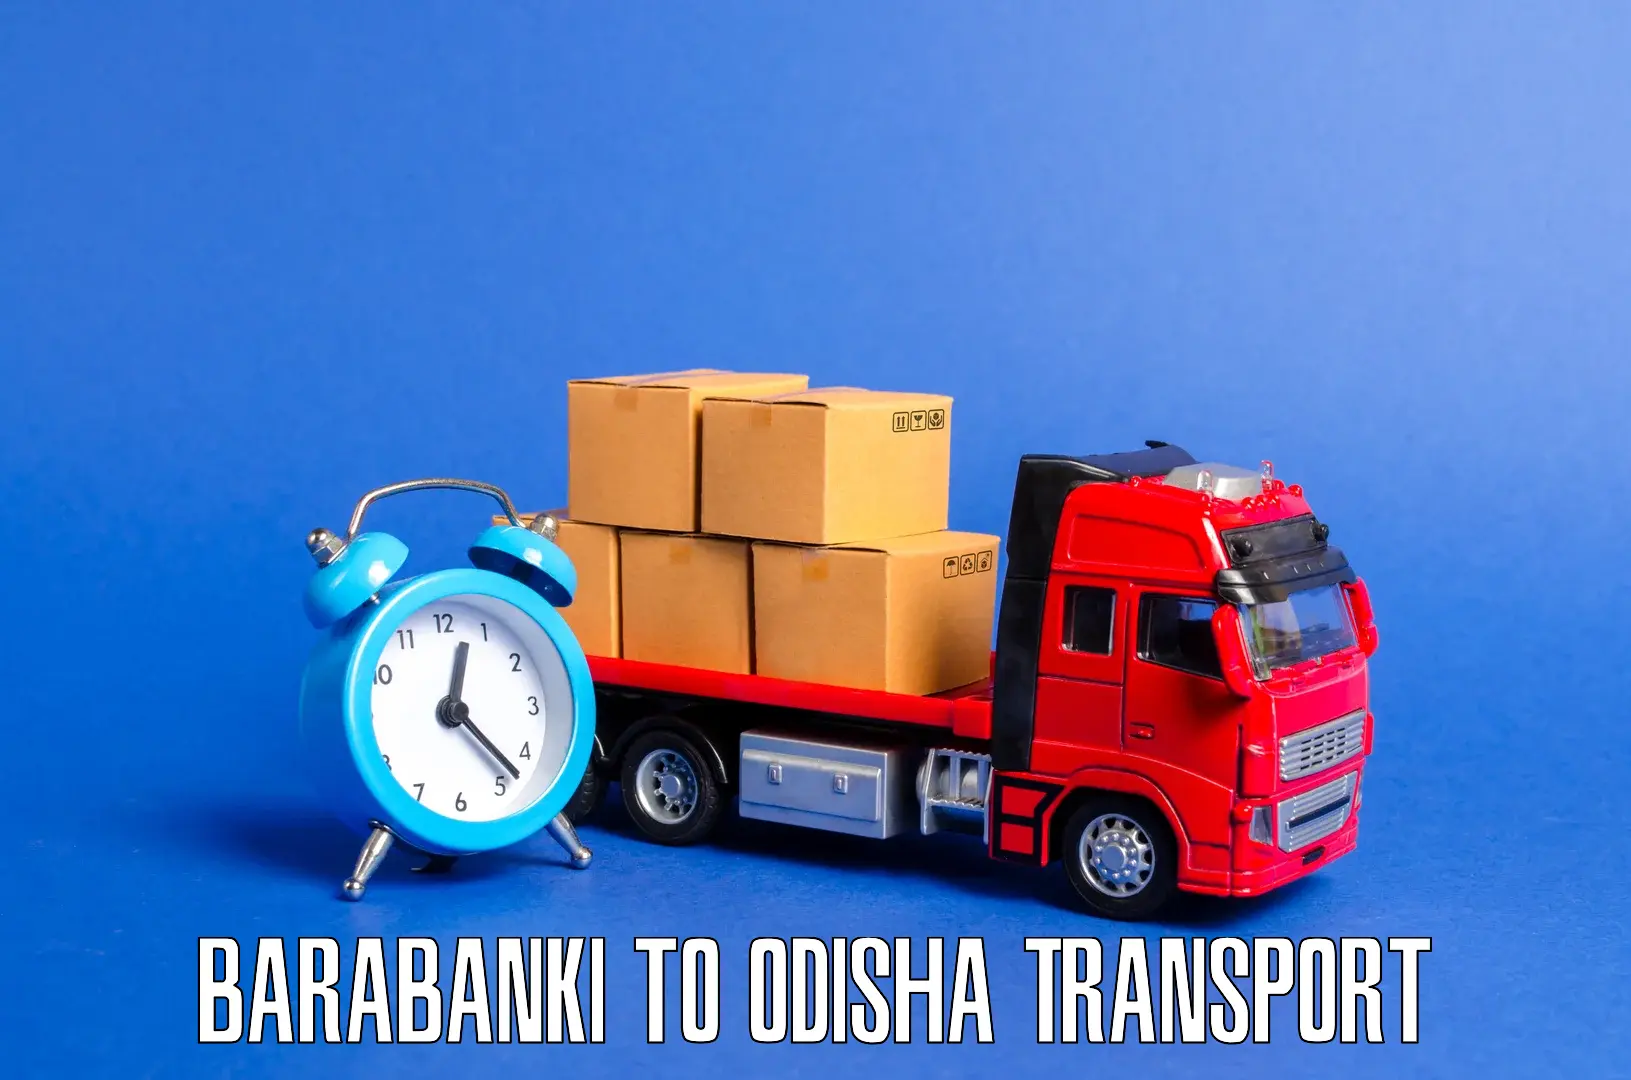 Daily transport service Barabanki to Baripada